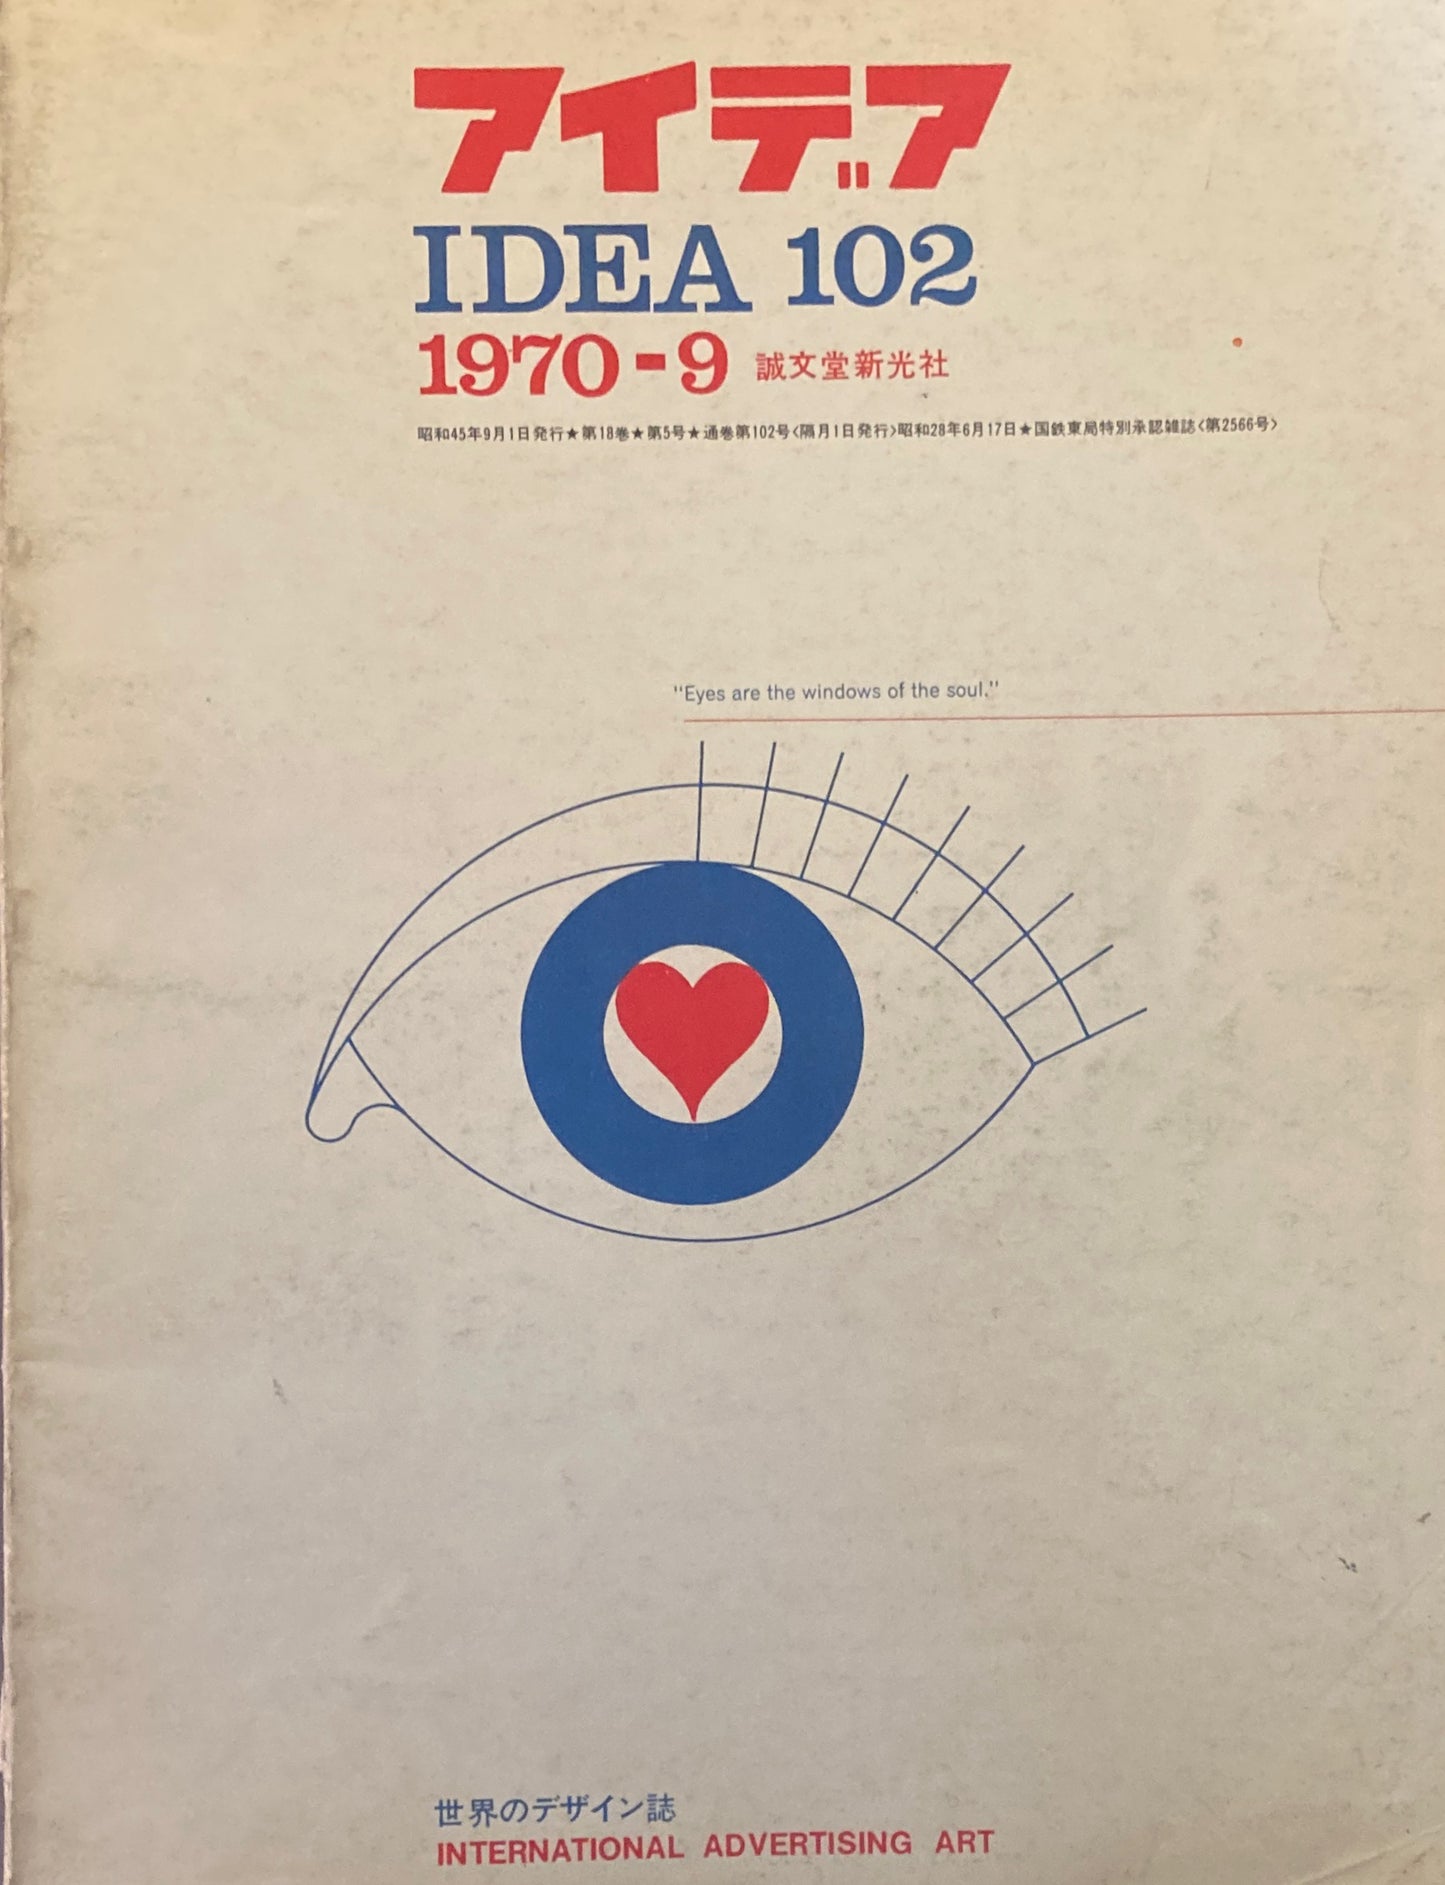 アイデア　102号　1970年9月号　idea magazine　